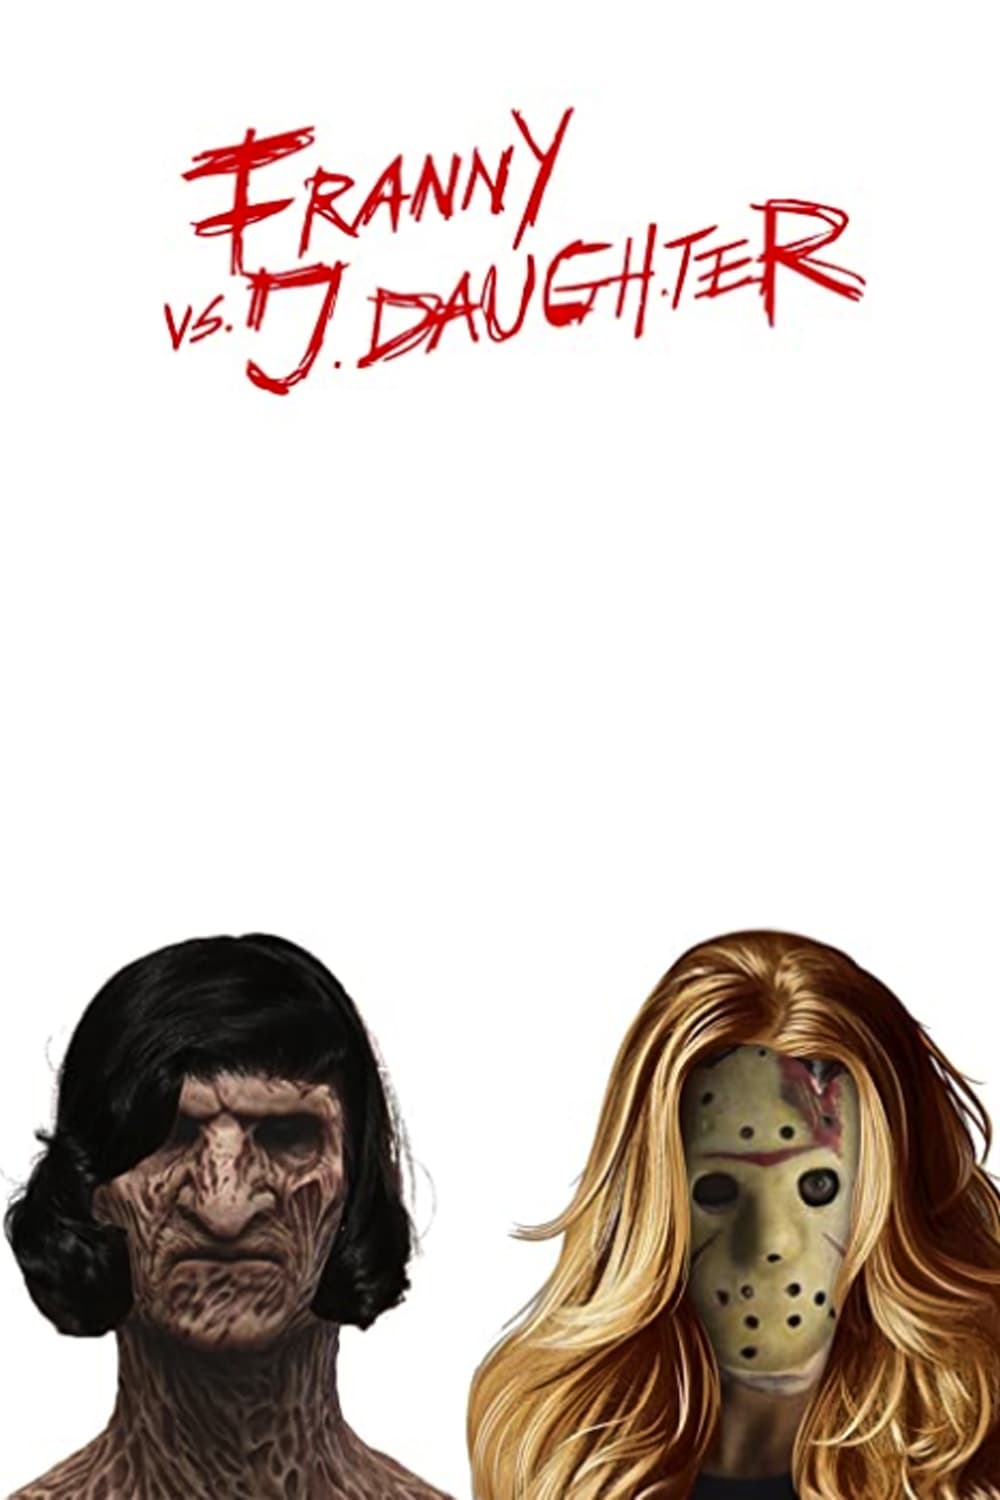 Franny vs. J. Daughter film